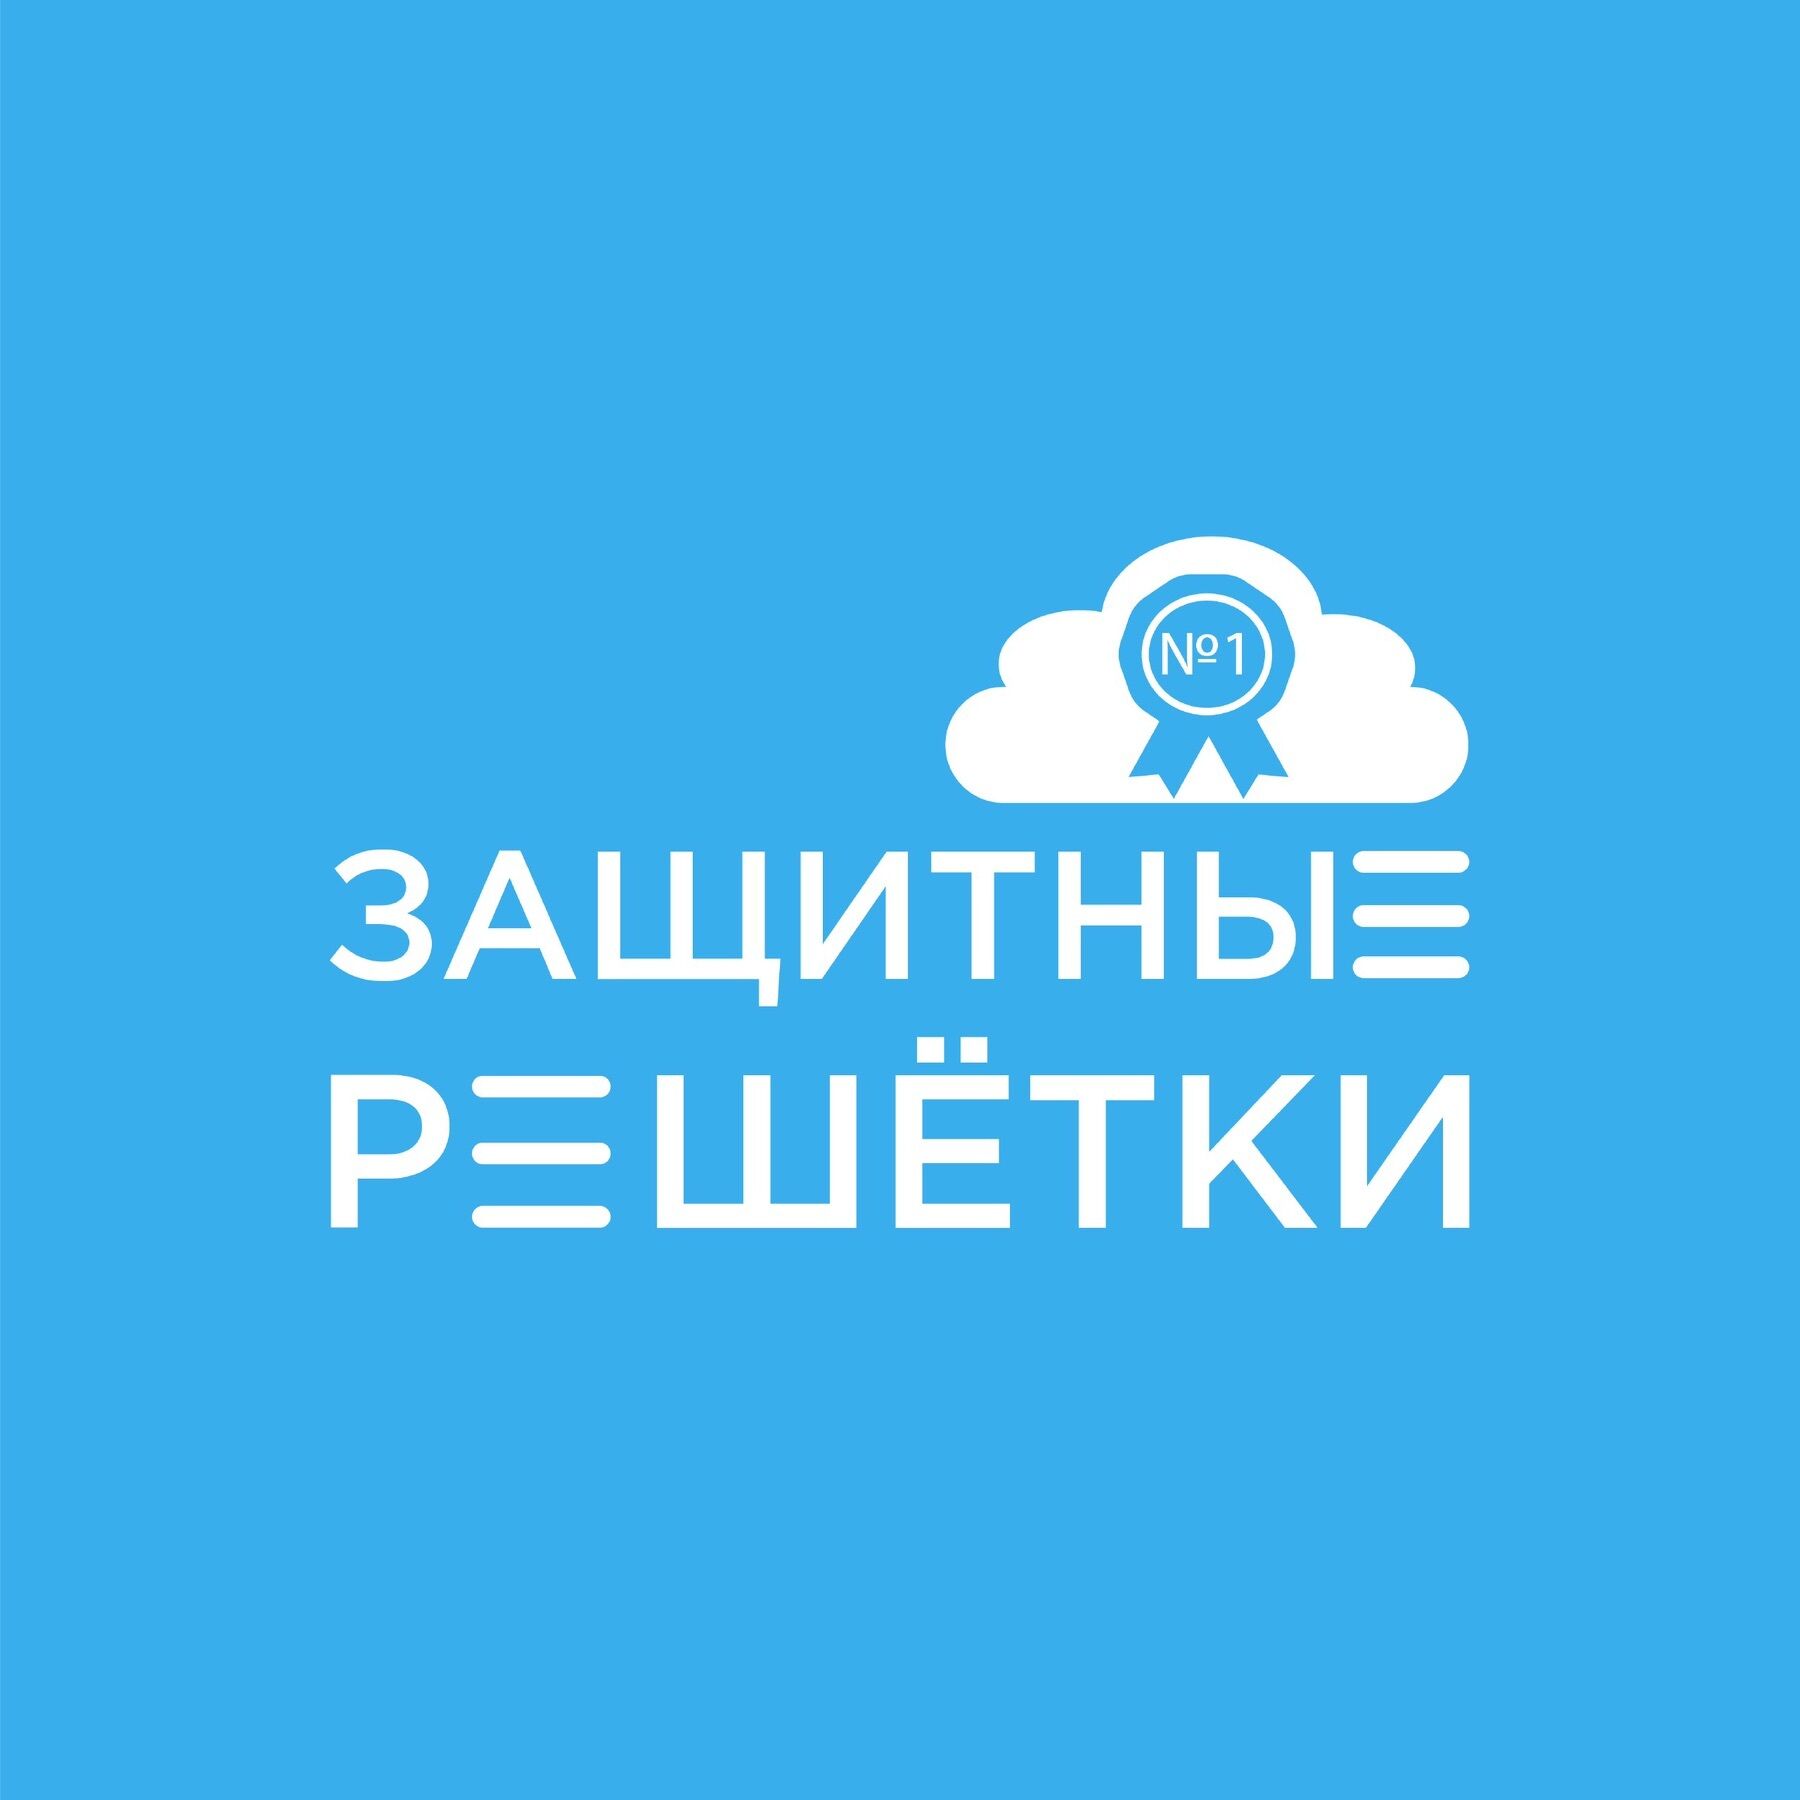 ЗАЩИТНЫЕ РЕШЁТКИ ➤ Кыргызстан ᐉ Бизнес-профиль компании на lalafo.kg